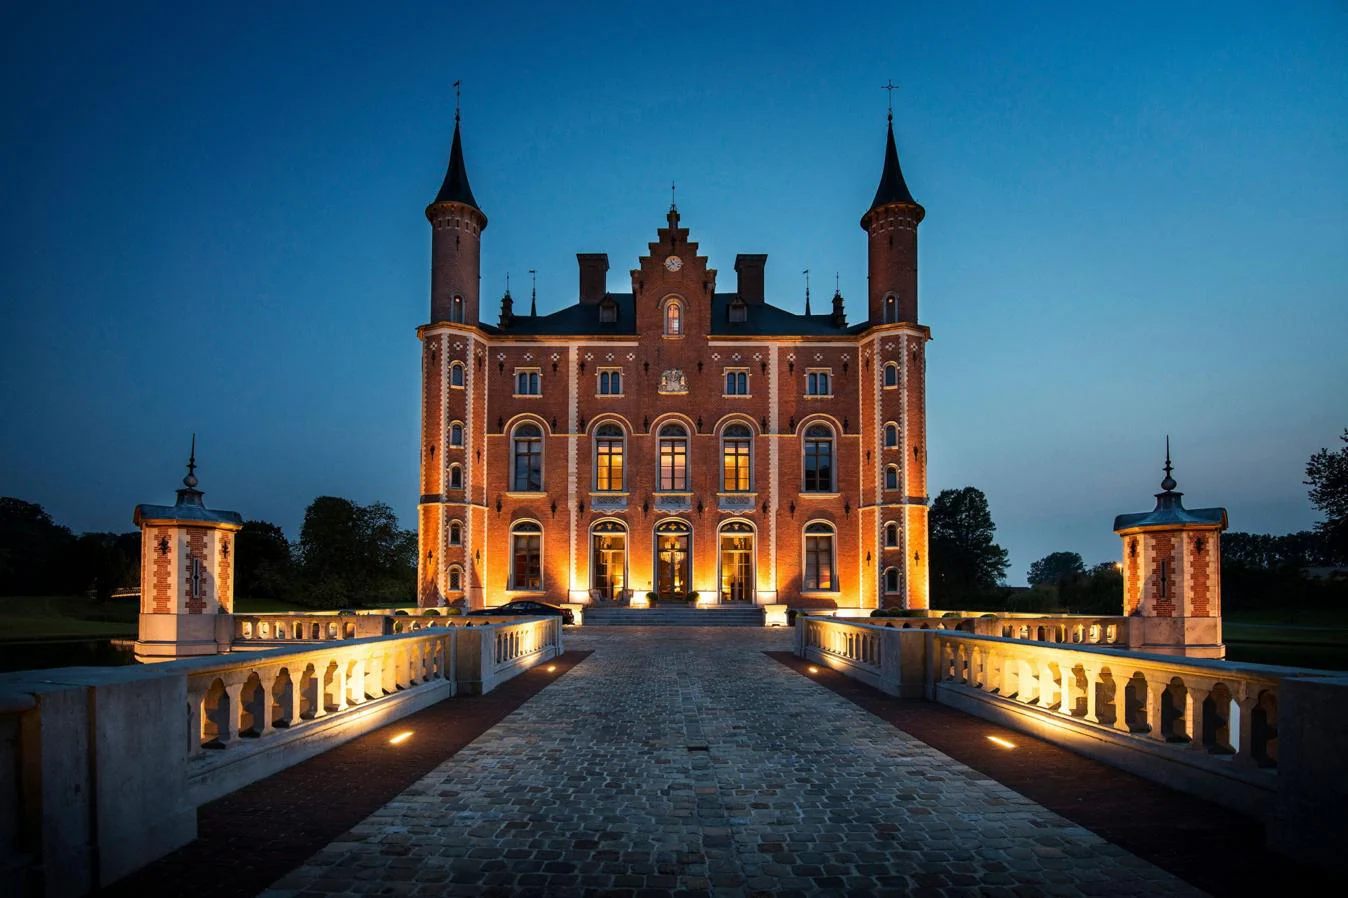 Kasteel van Olsene, Bélgica. Este imponente castillo del S.XIX está ubicado en Bélgica, a 70 kilómetros de Bruselas. Mide más de 2.000 metros cuadrados y, a pesar de la fecha de construcción del inmueble, está como nuevo ya que fue restaurado entre 2004 y 2012